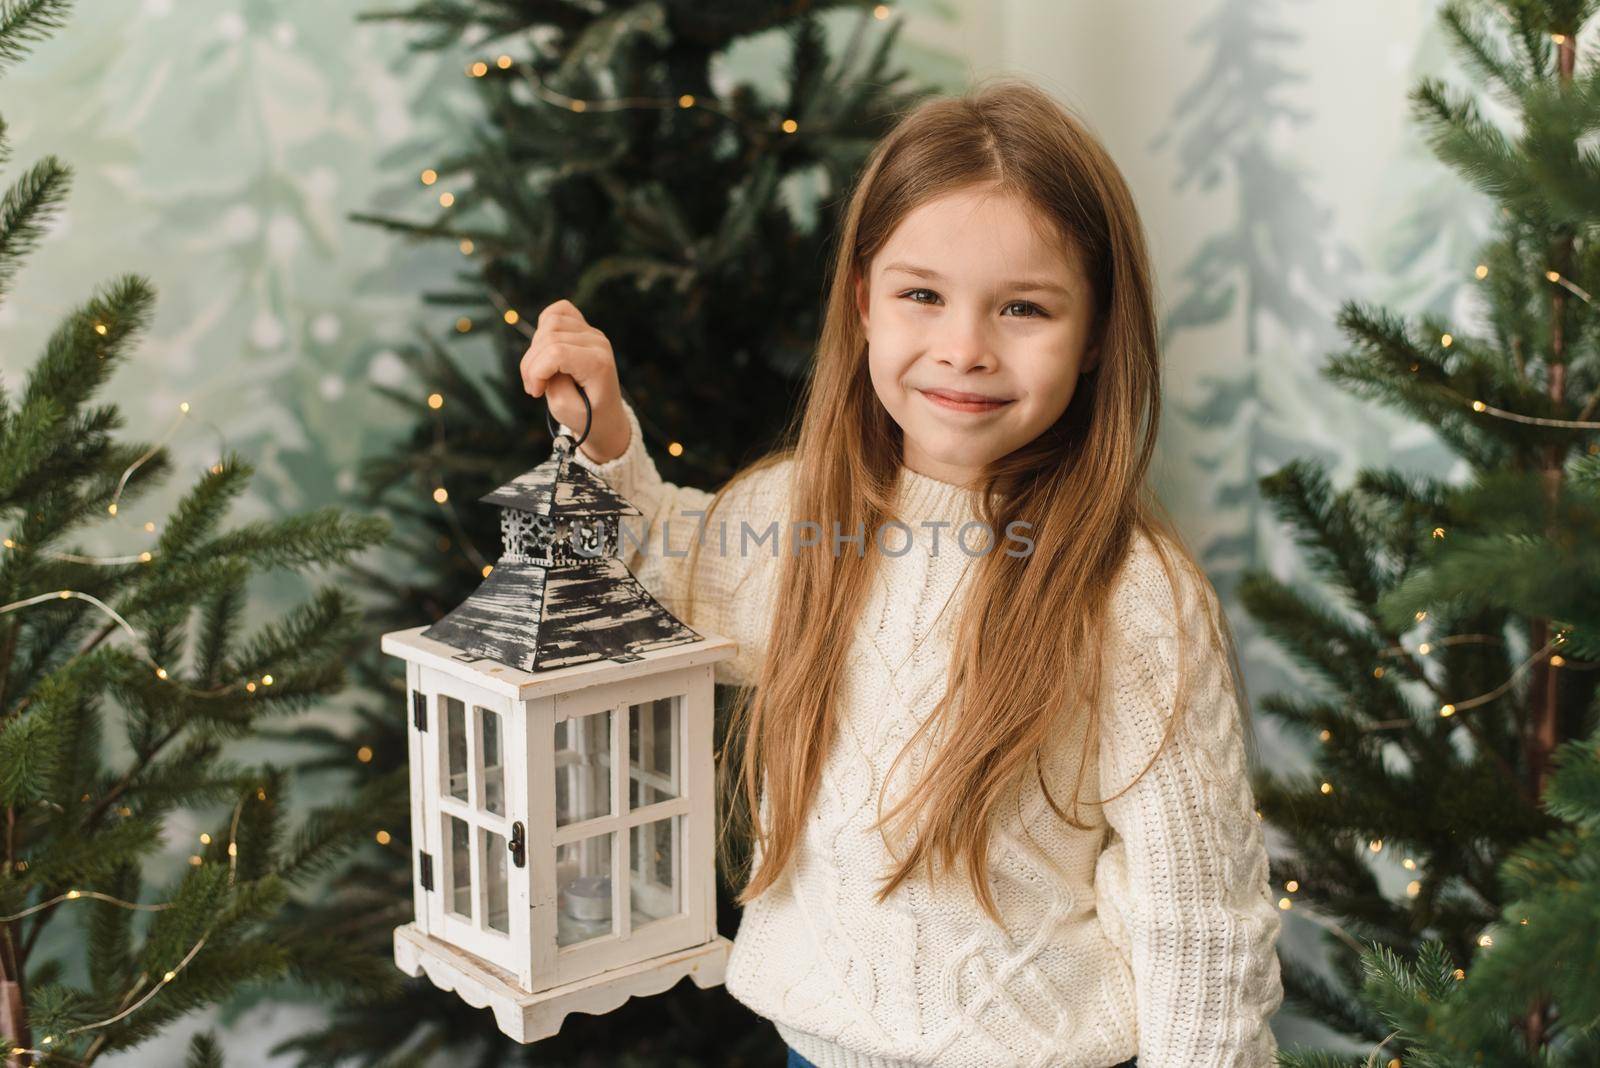 Cute baby girl holding a Christmas lantern among the Christmas trees